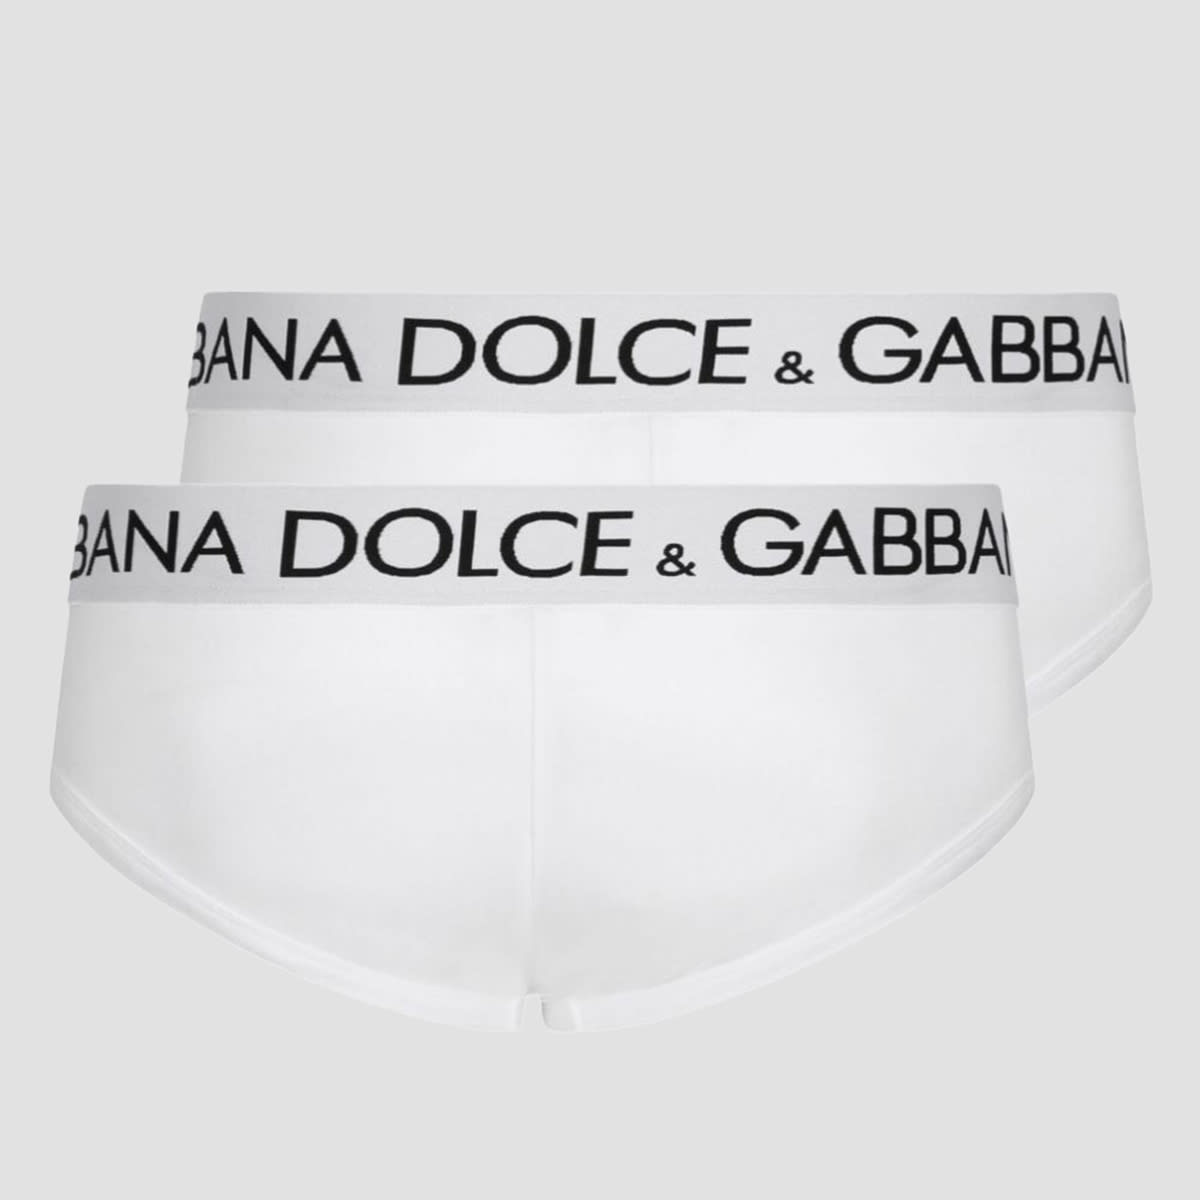 Shop Dolce & Gabbana White Cotton Set Briefs